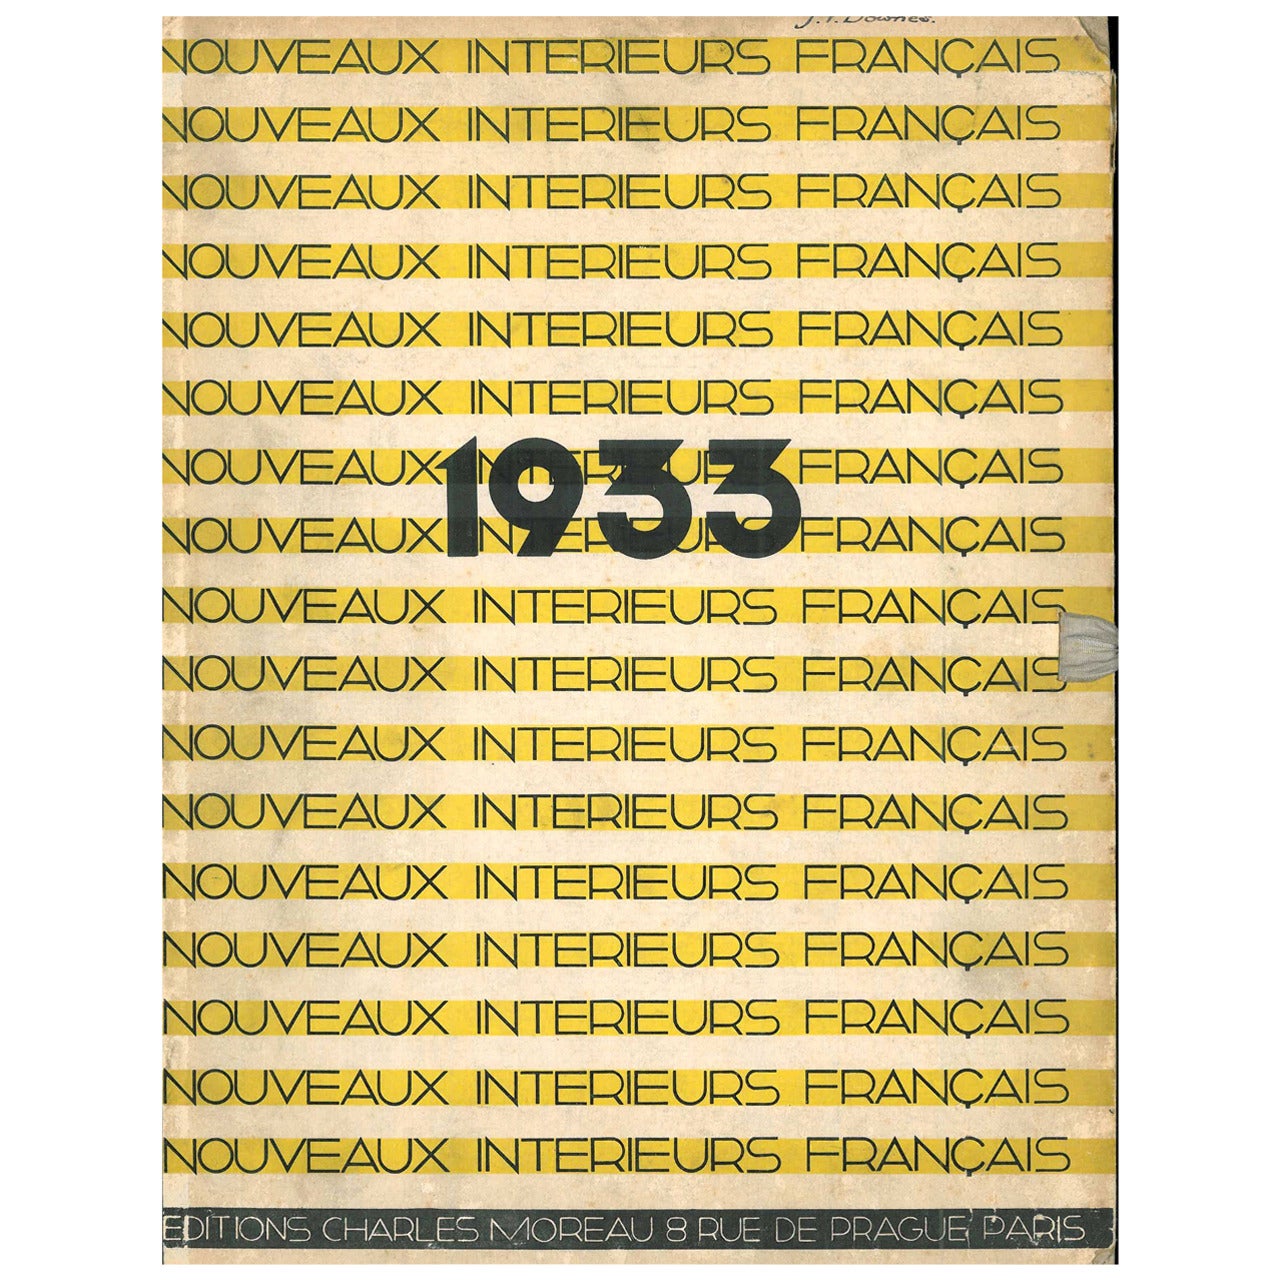 Nouveaux Interieurs Francais, 1933, 1934 and 1935